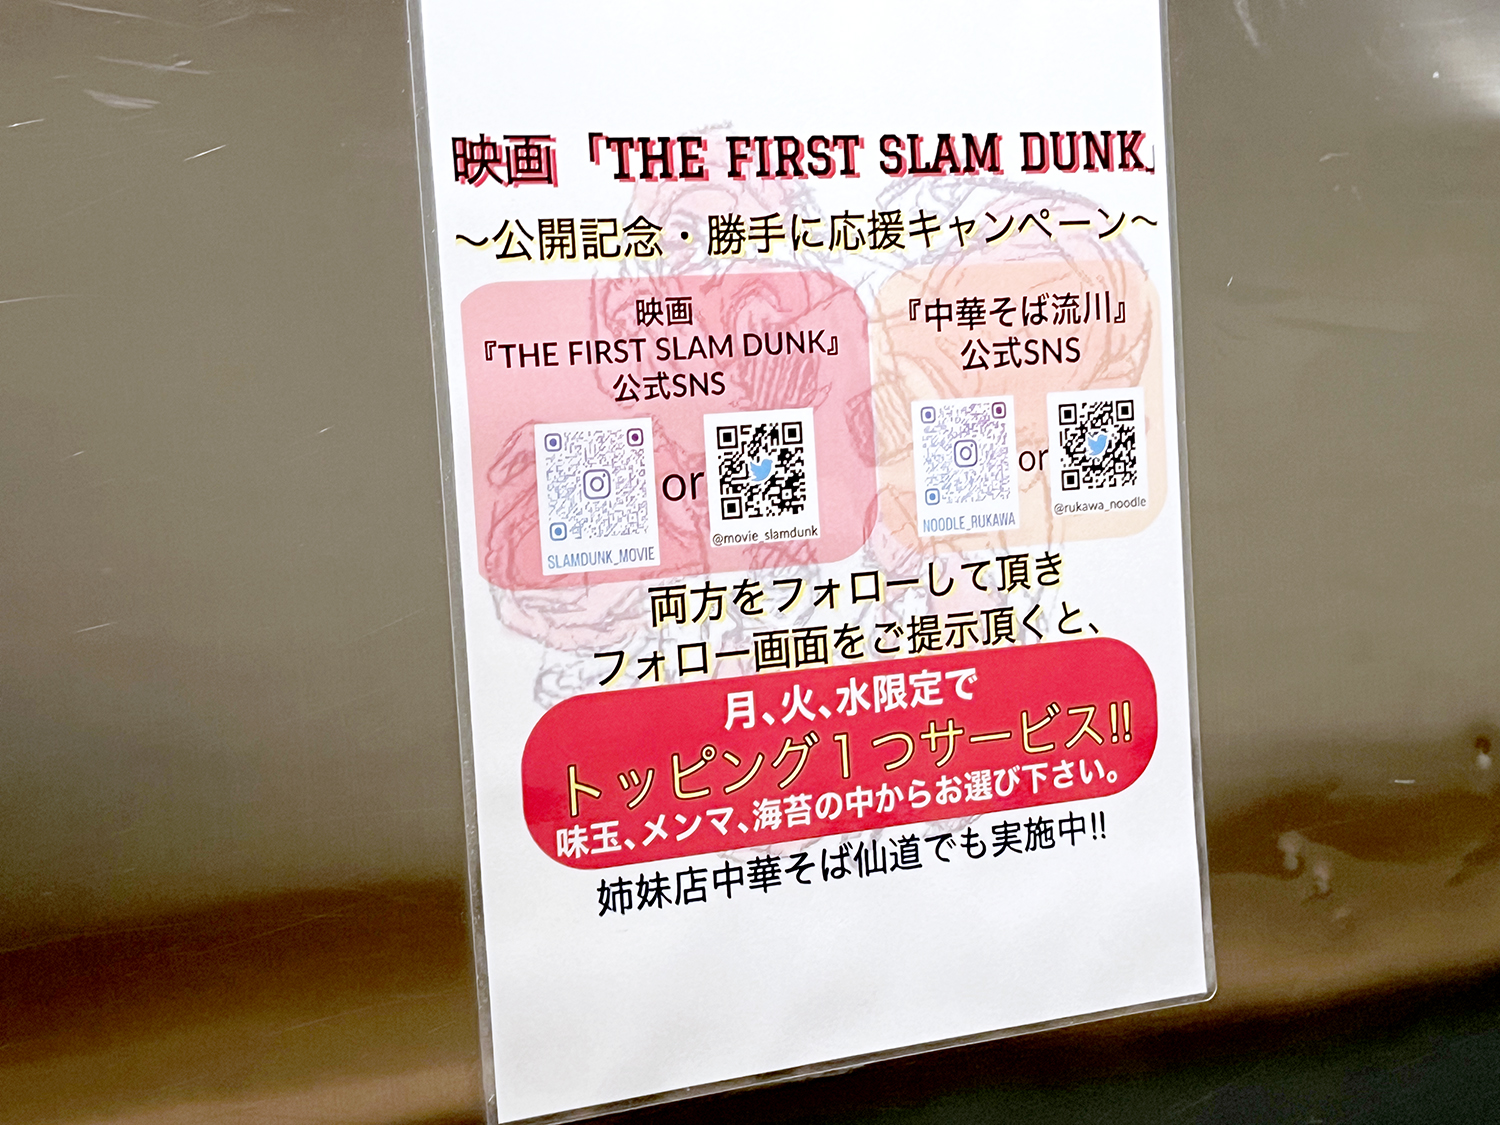 話題の映画『THE FIRST SLAM DUNK』公開に合わせ、キャンペーンを実施。